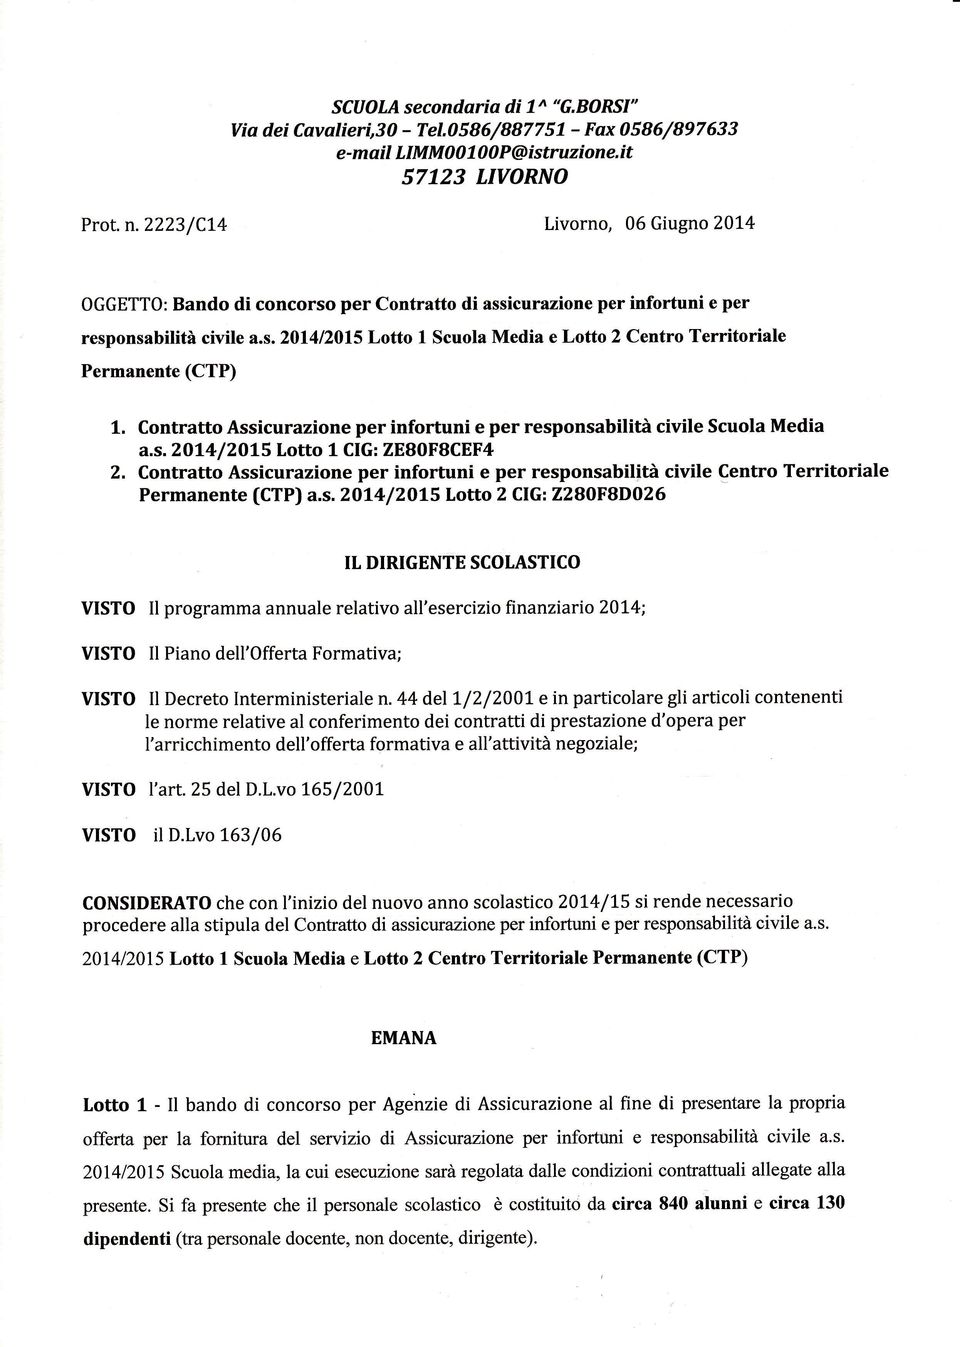 Contratto Assicurazione per infortuni e per responsabilita civile Scuola Media a.s. 2Ol4 /?OLS Lotto 1 CIG: ZE80F8CEF4 2.